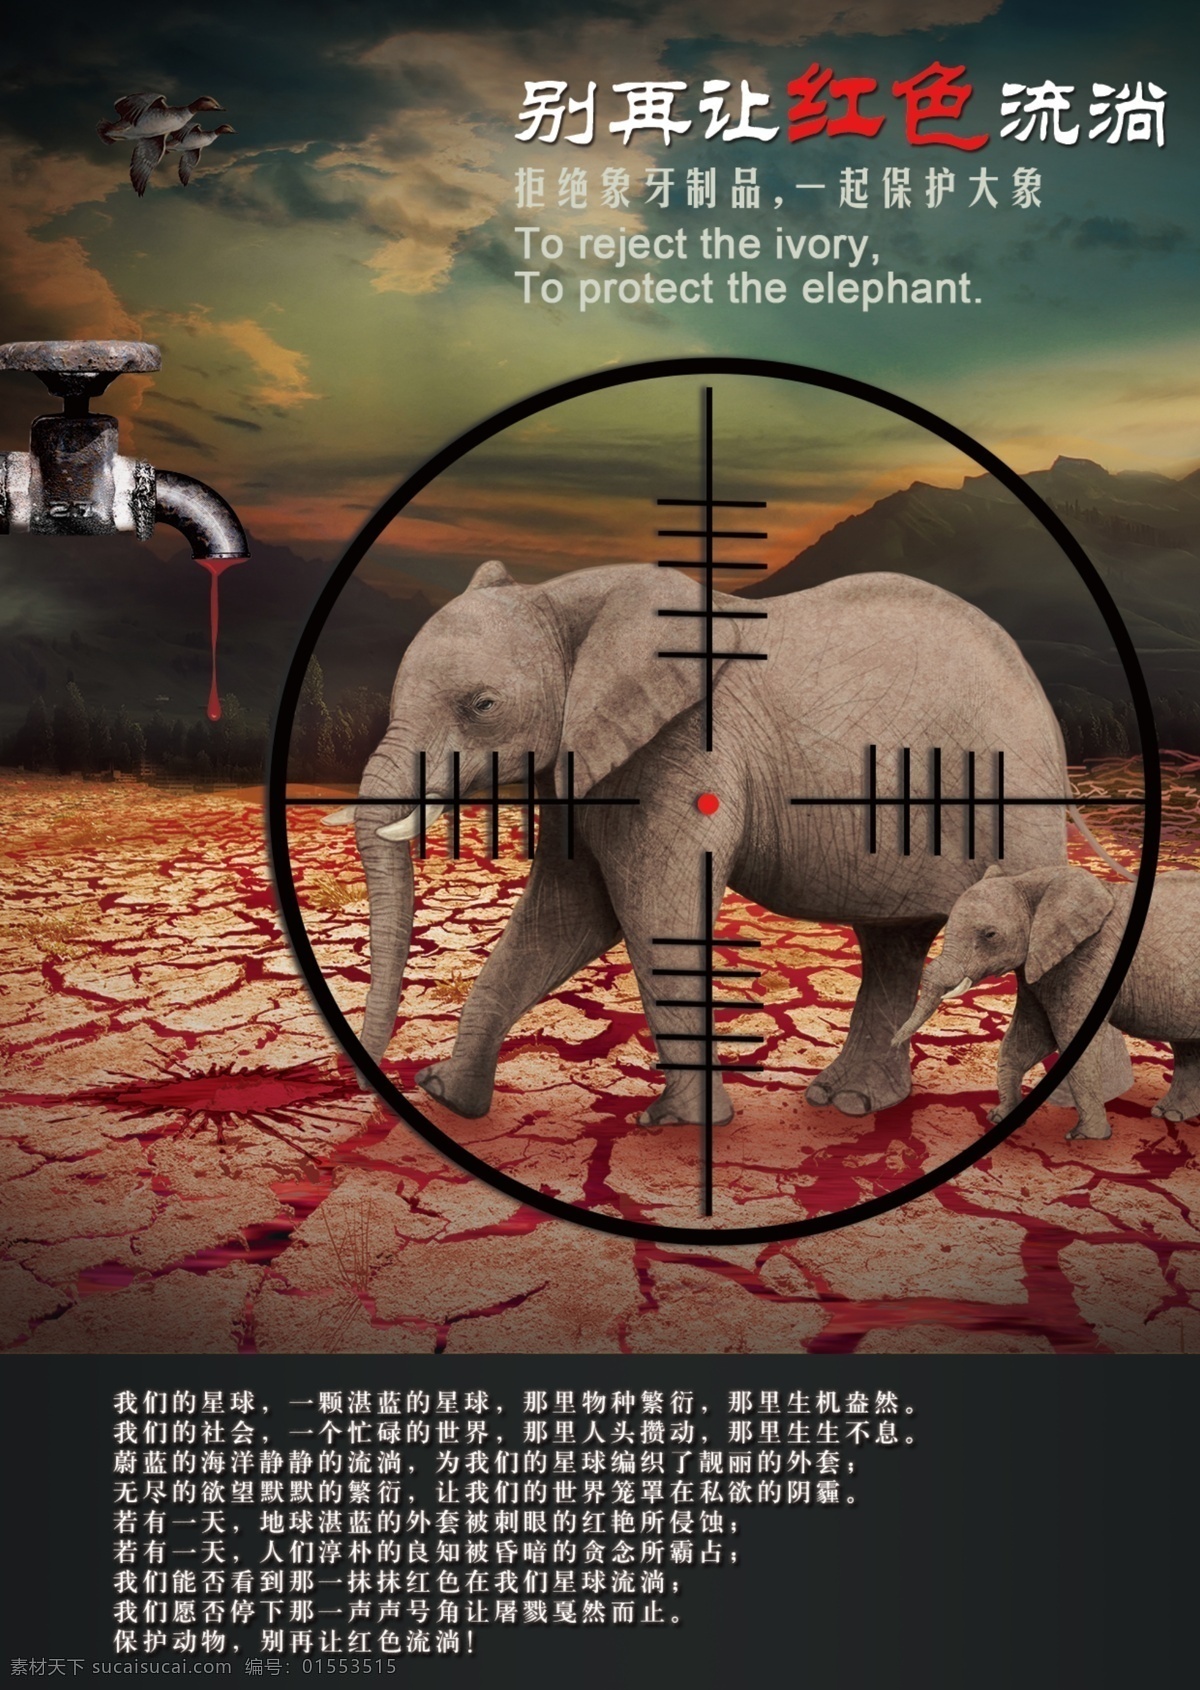 保护 动物 血腥 海报 杂志 保护动物 杀戮 大象 血液